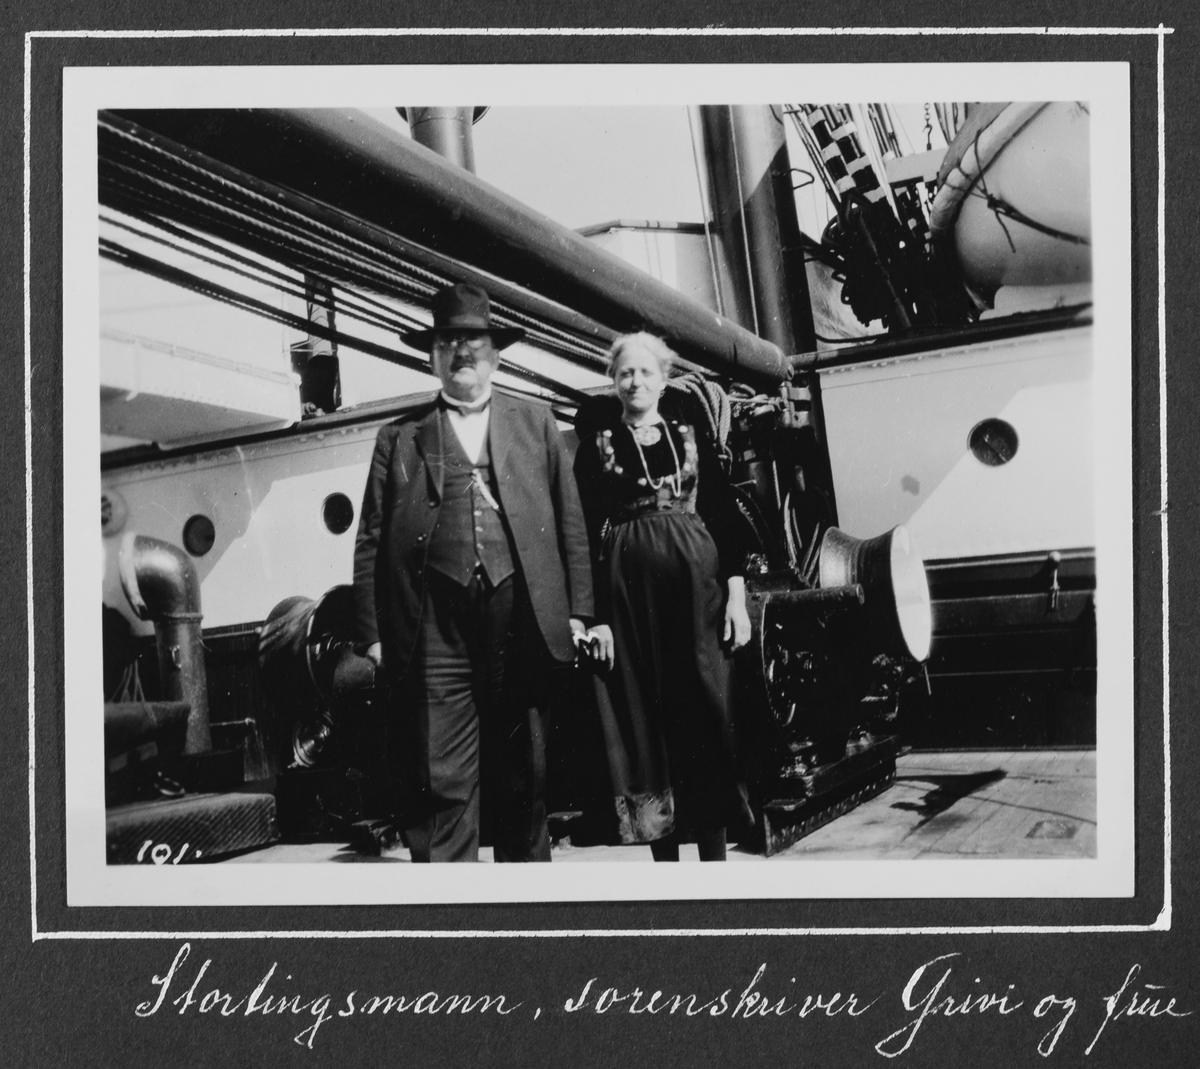 Fra 1000 årsfesten for Alltinget på Island i 1930. Stortingsmann,  sorenskriver Grini og frue.